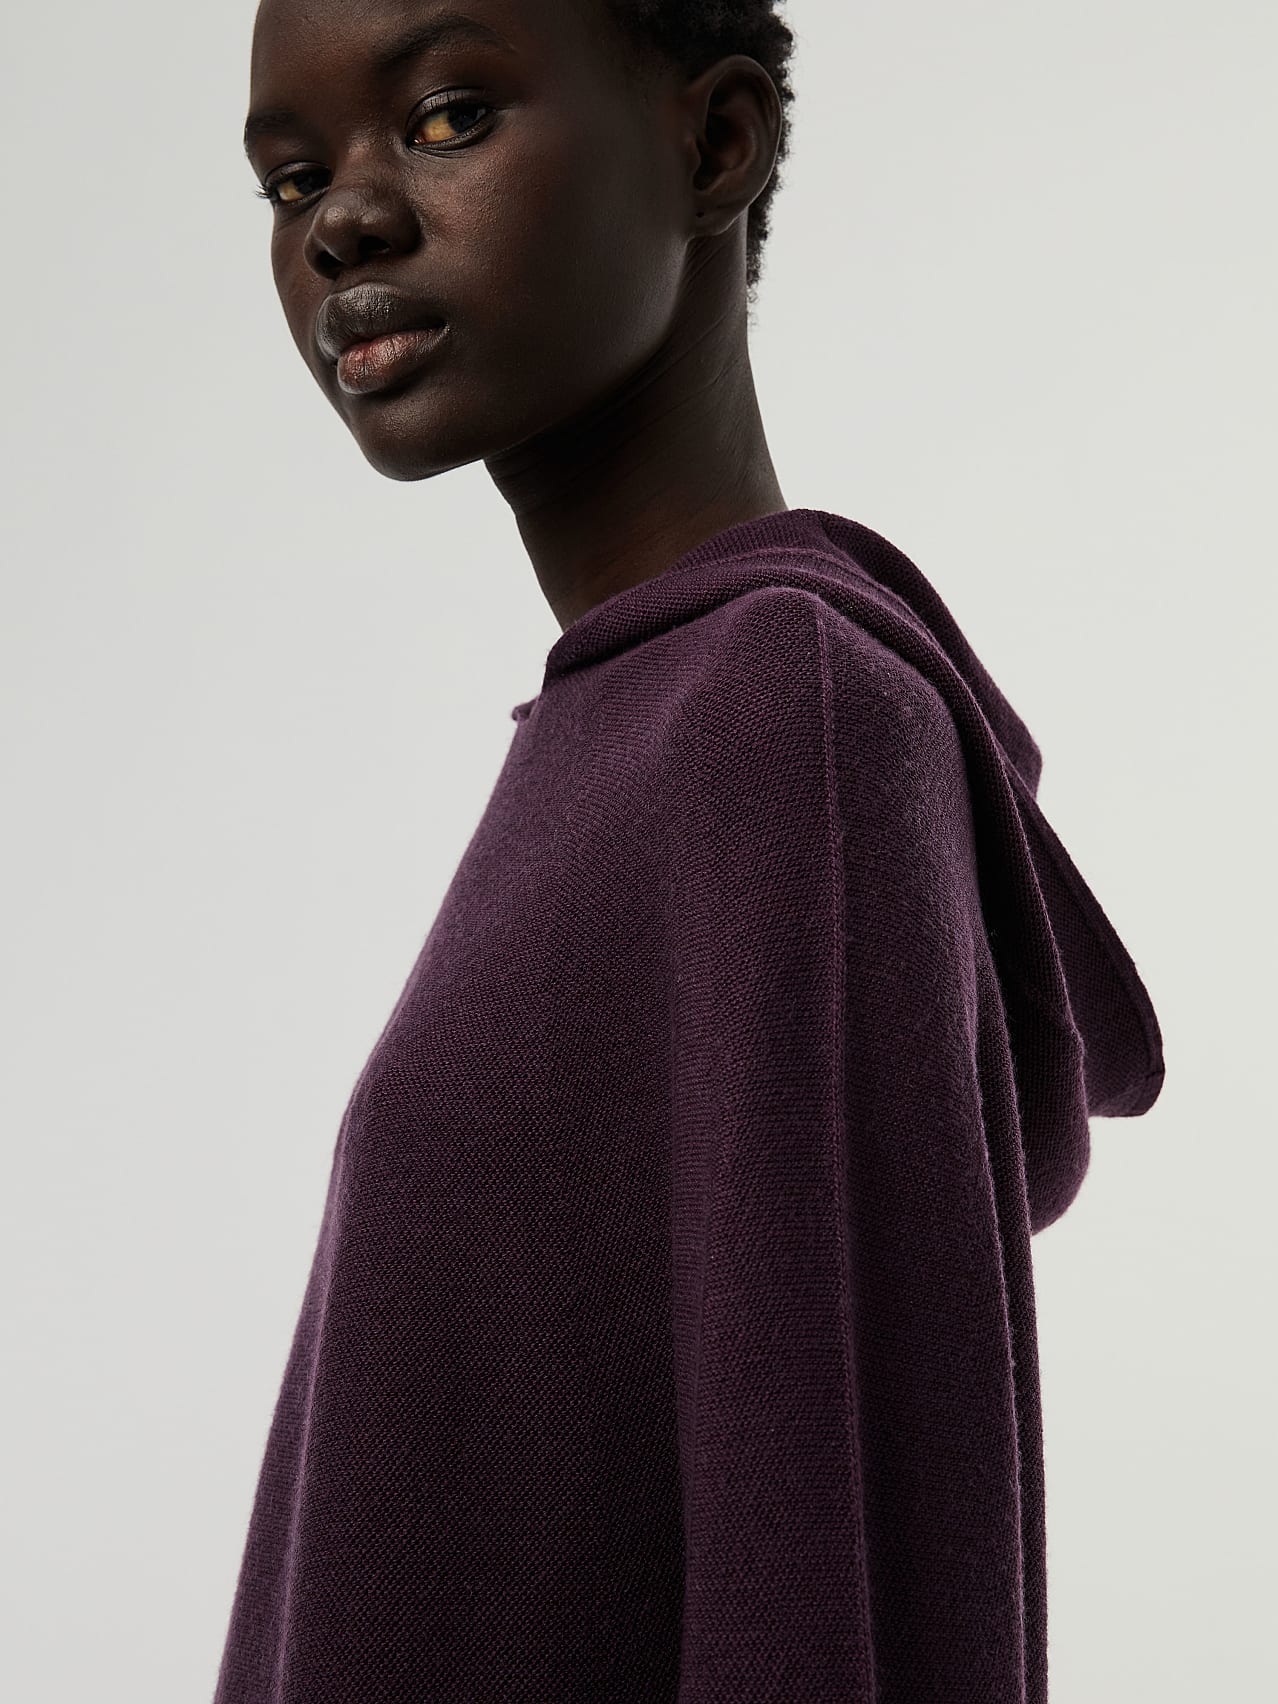 Hoodies & Sweatshirts for women | AlphaTauri